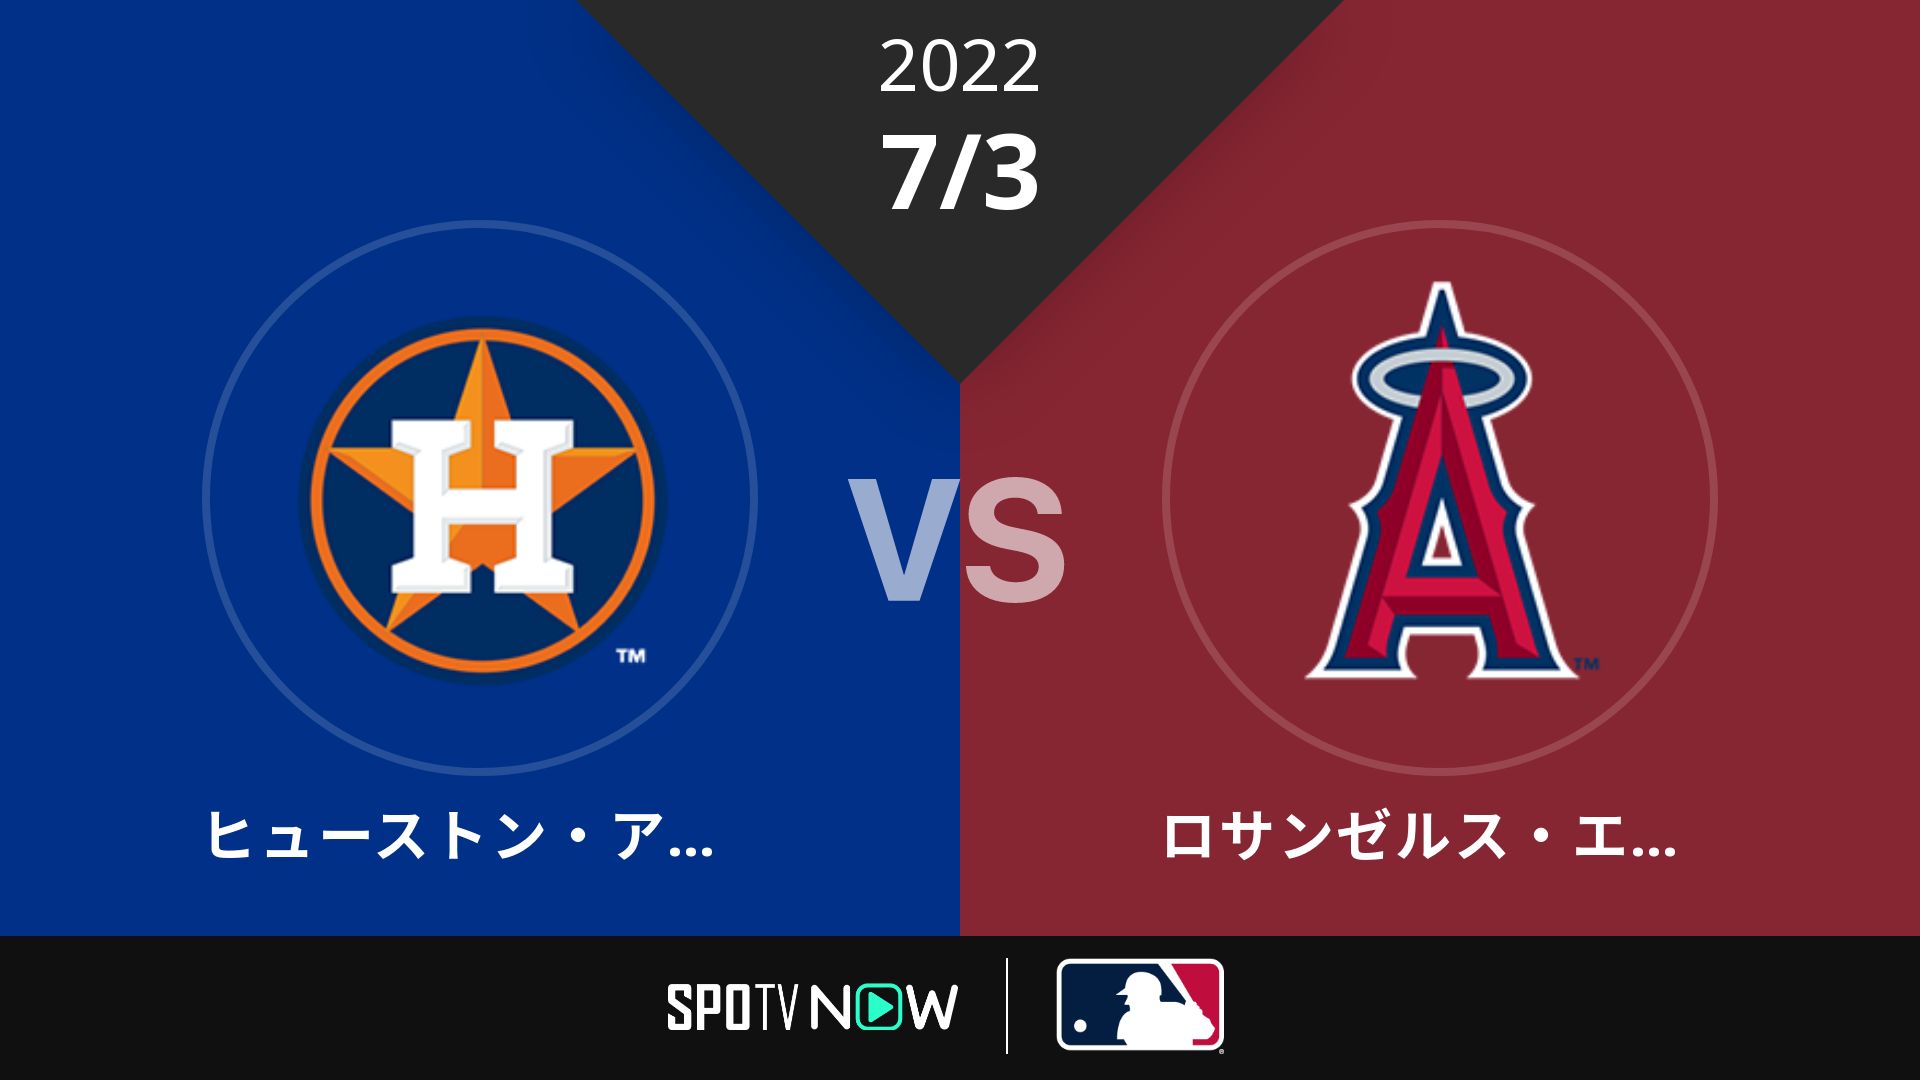 2022/7/3 アストロズ vs エンゼルス [MLB]